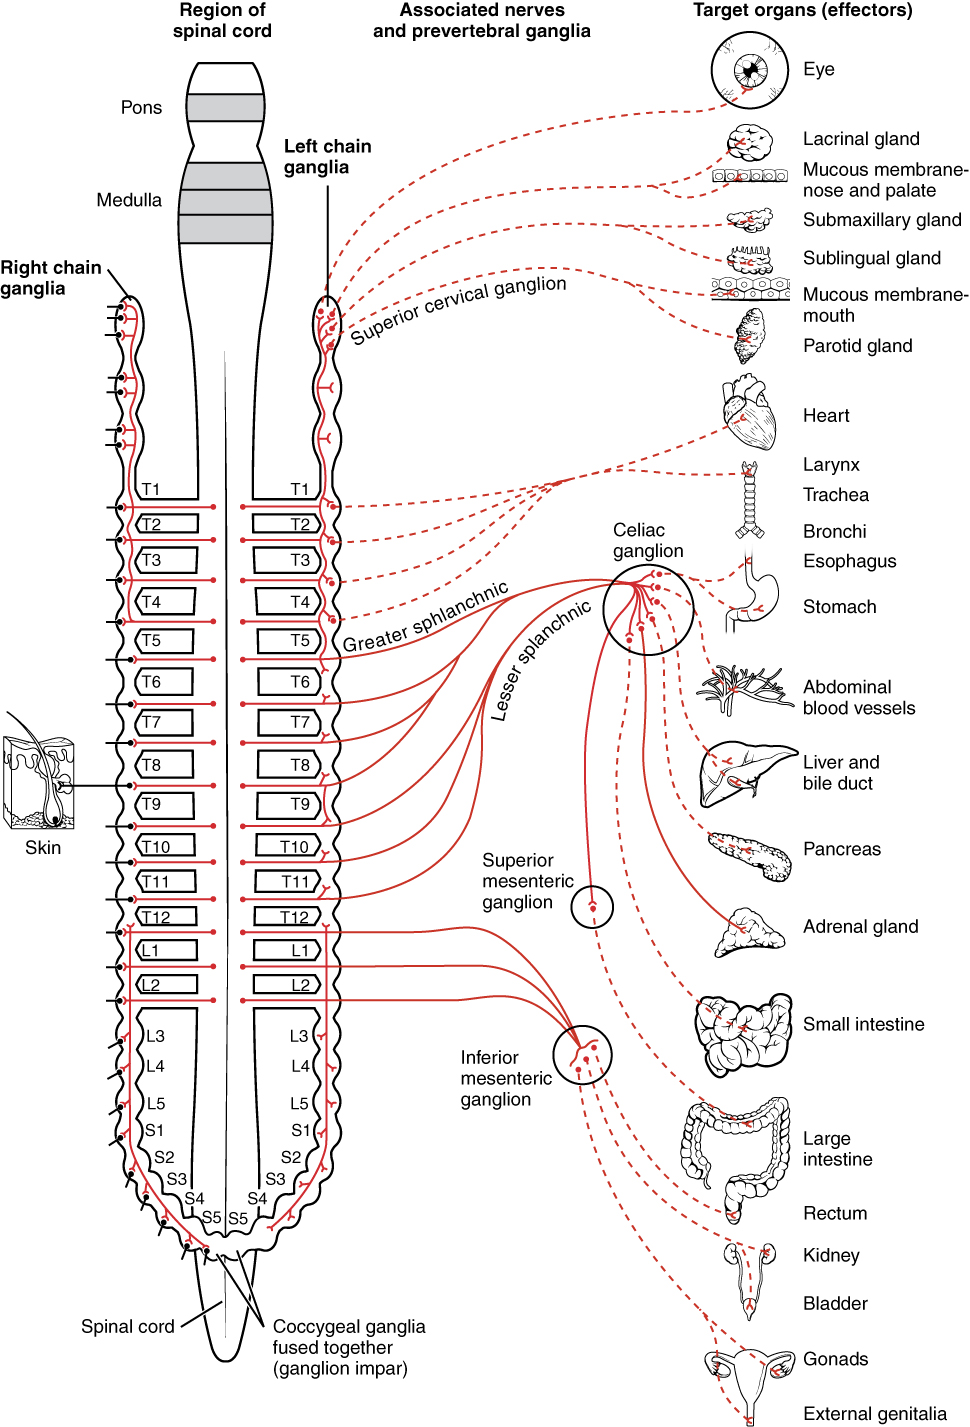 Sympathetic nervous system - Wikipedia